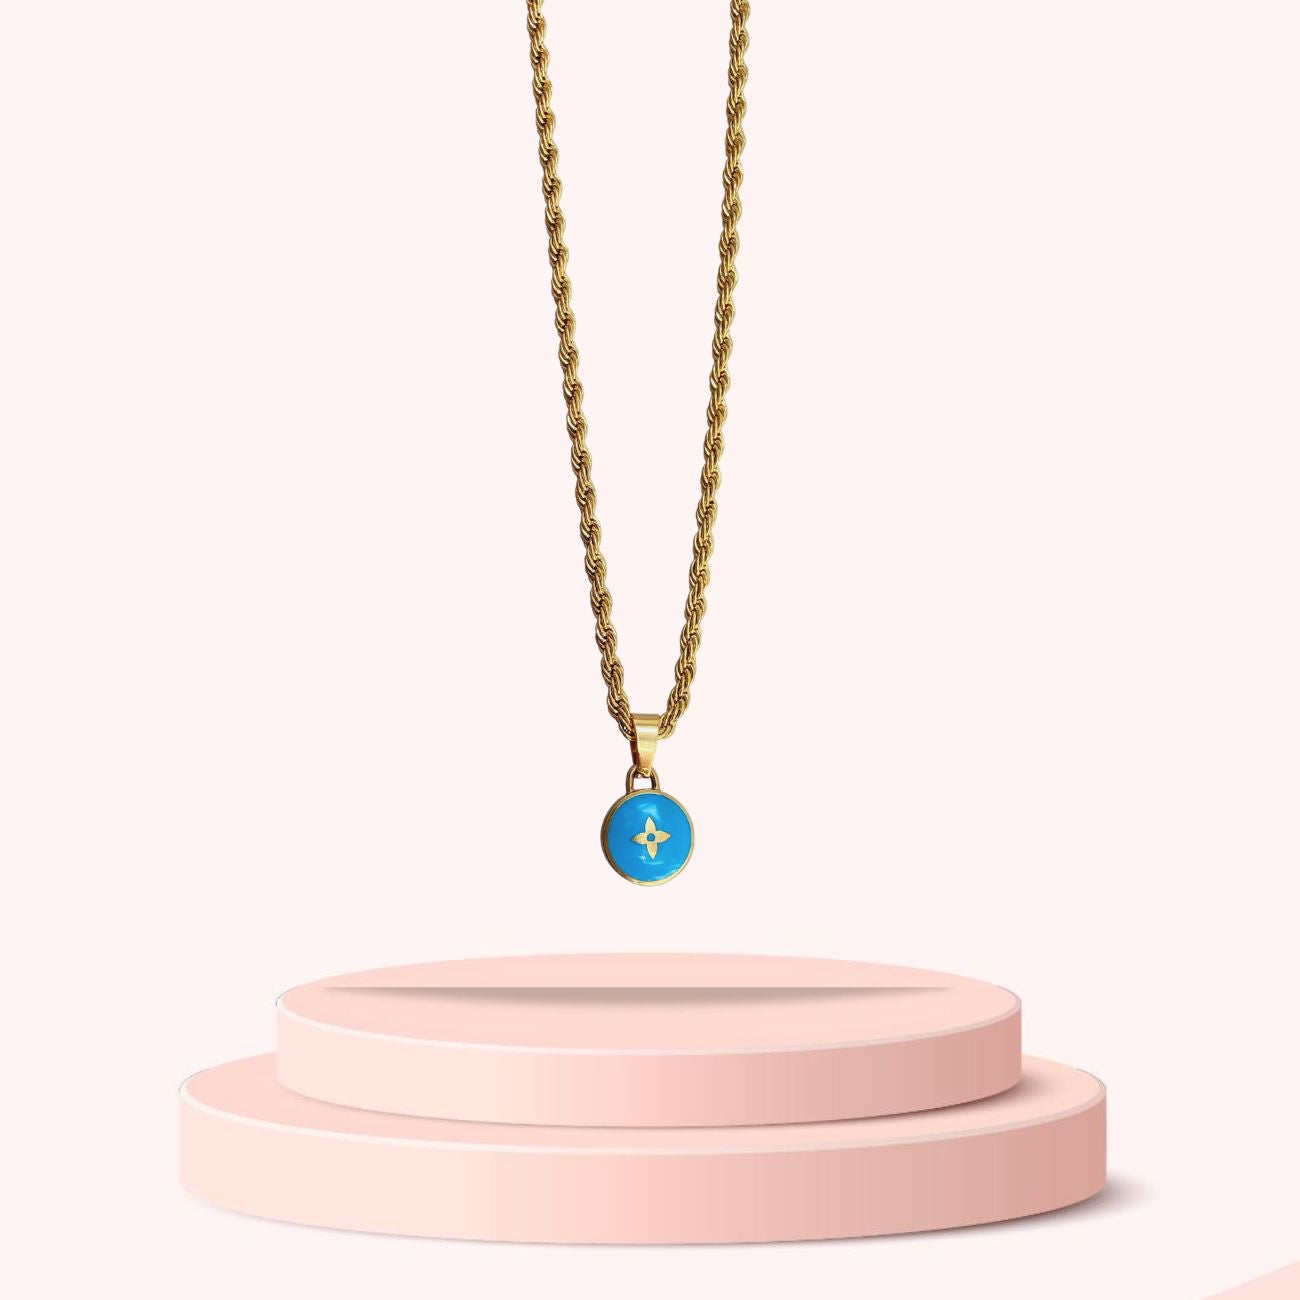 Louis Vuitton Blue Charm Necklace